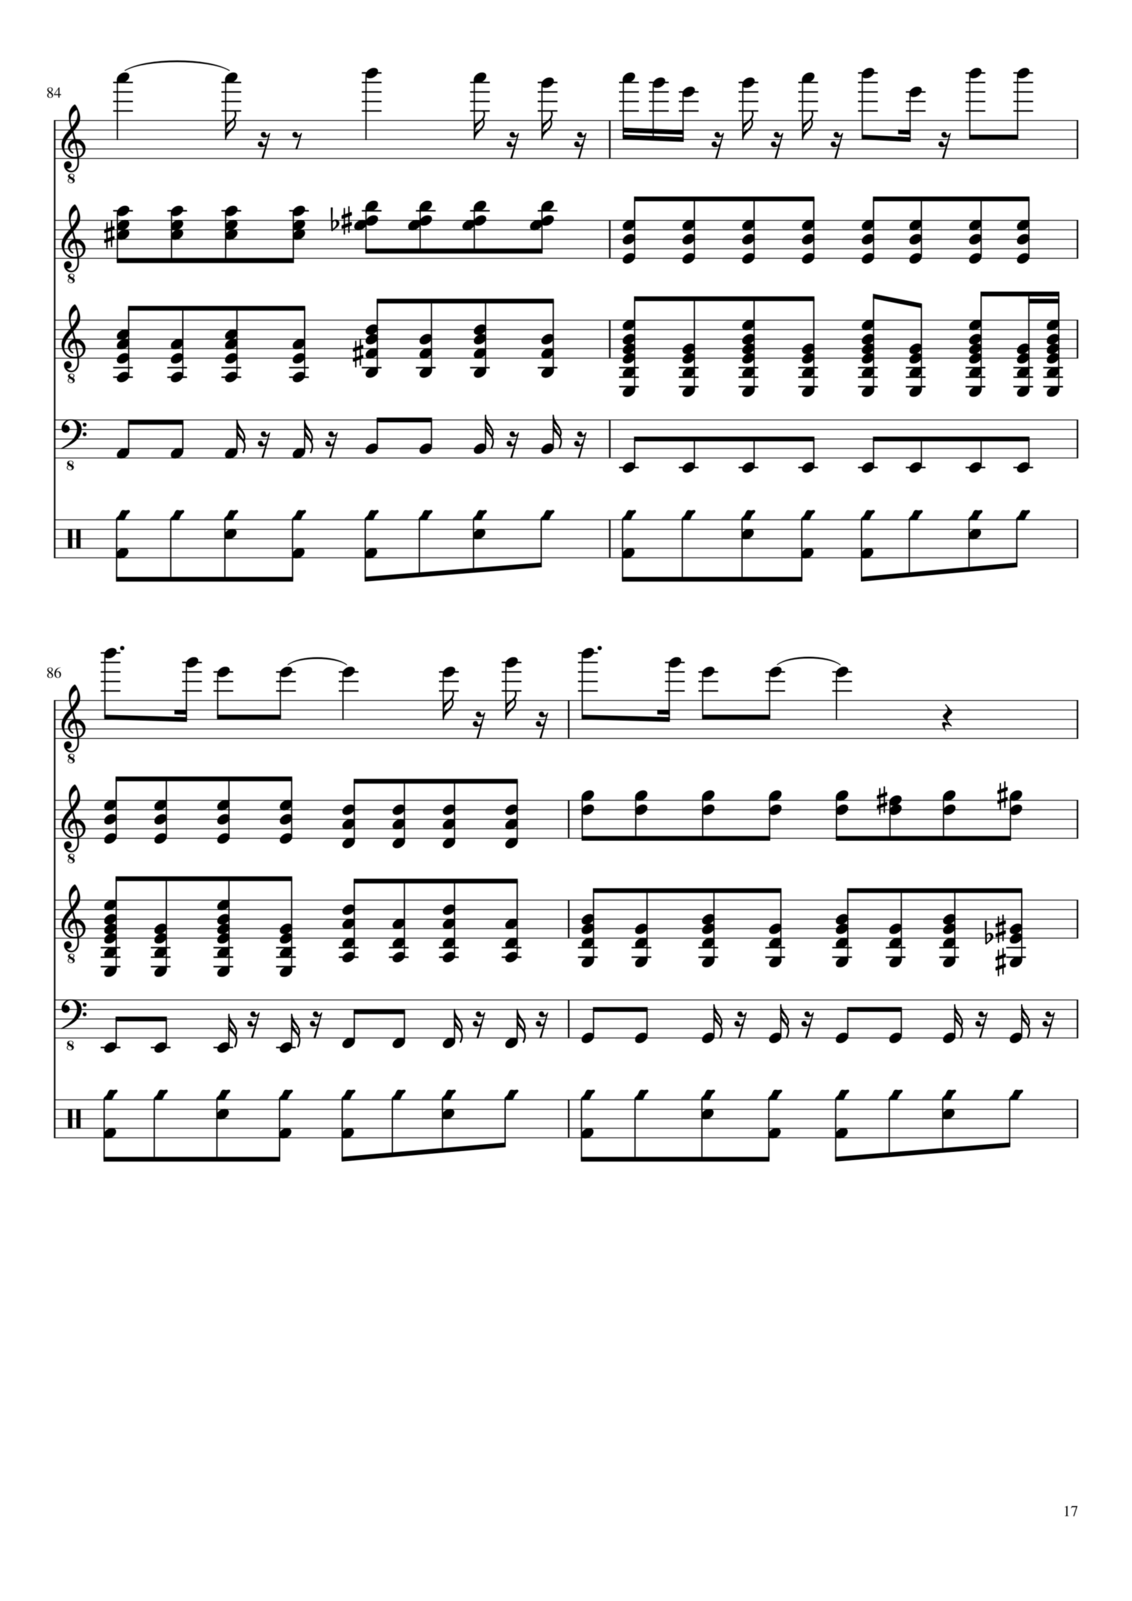 Vechnaya molodost slide, Image 17